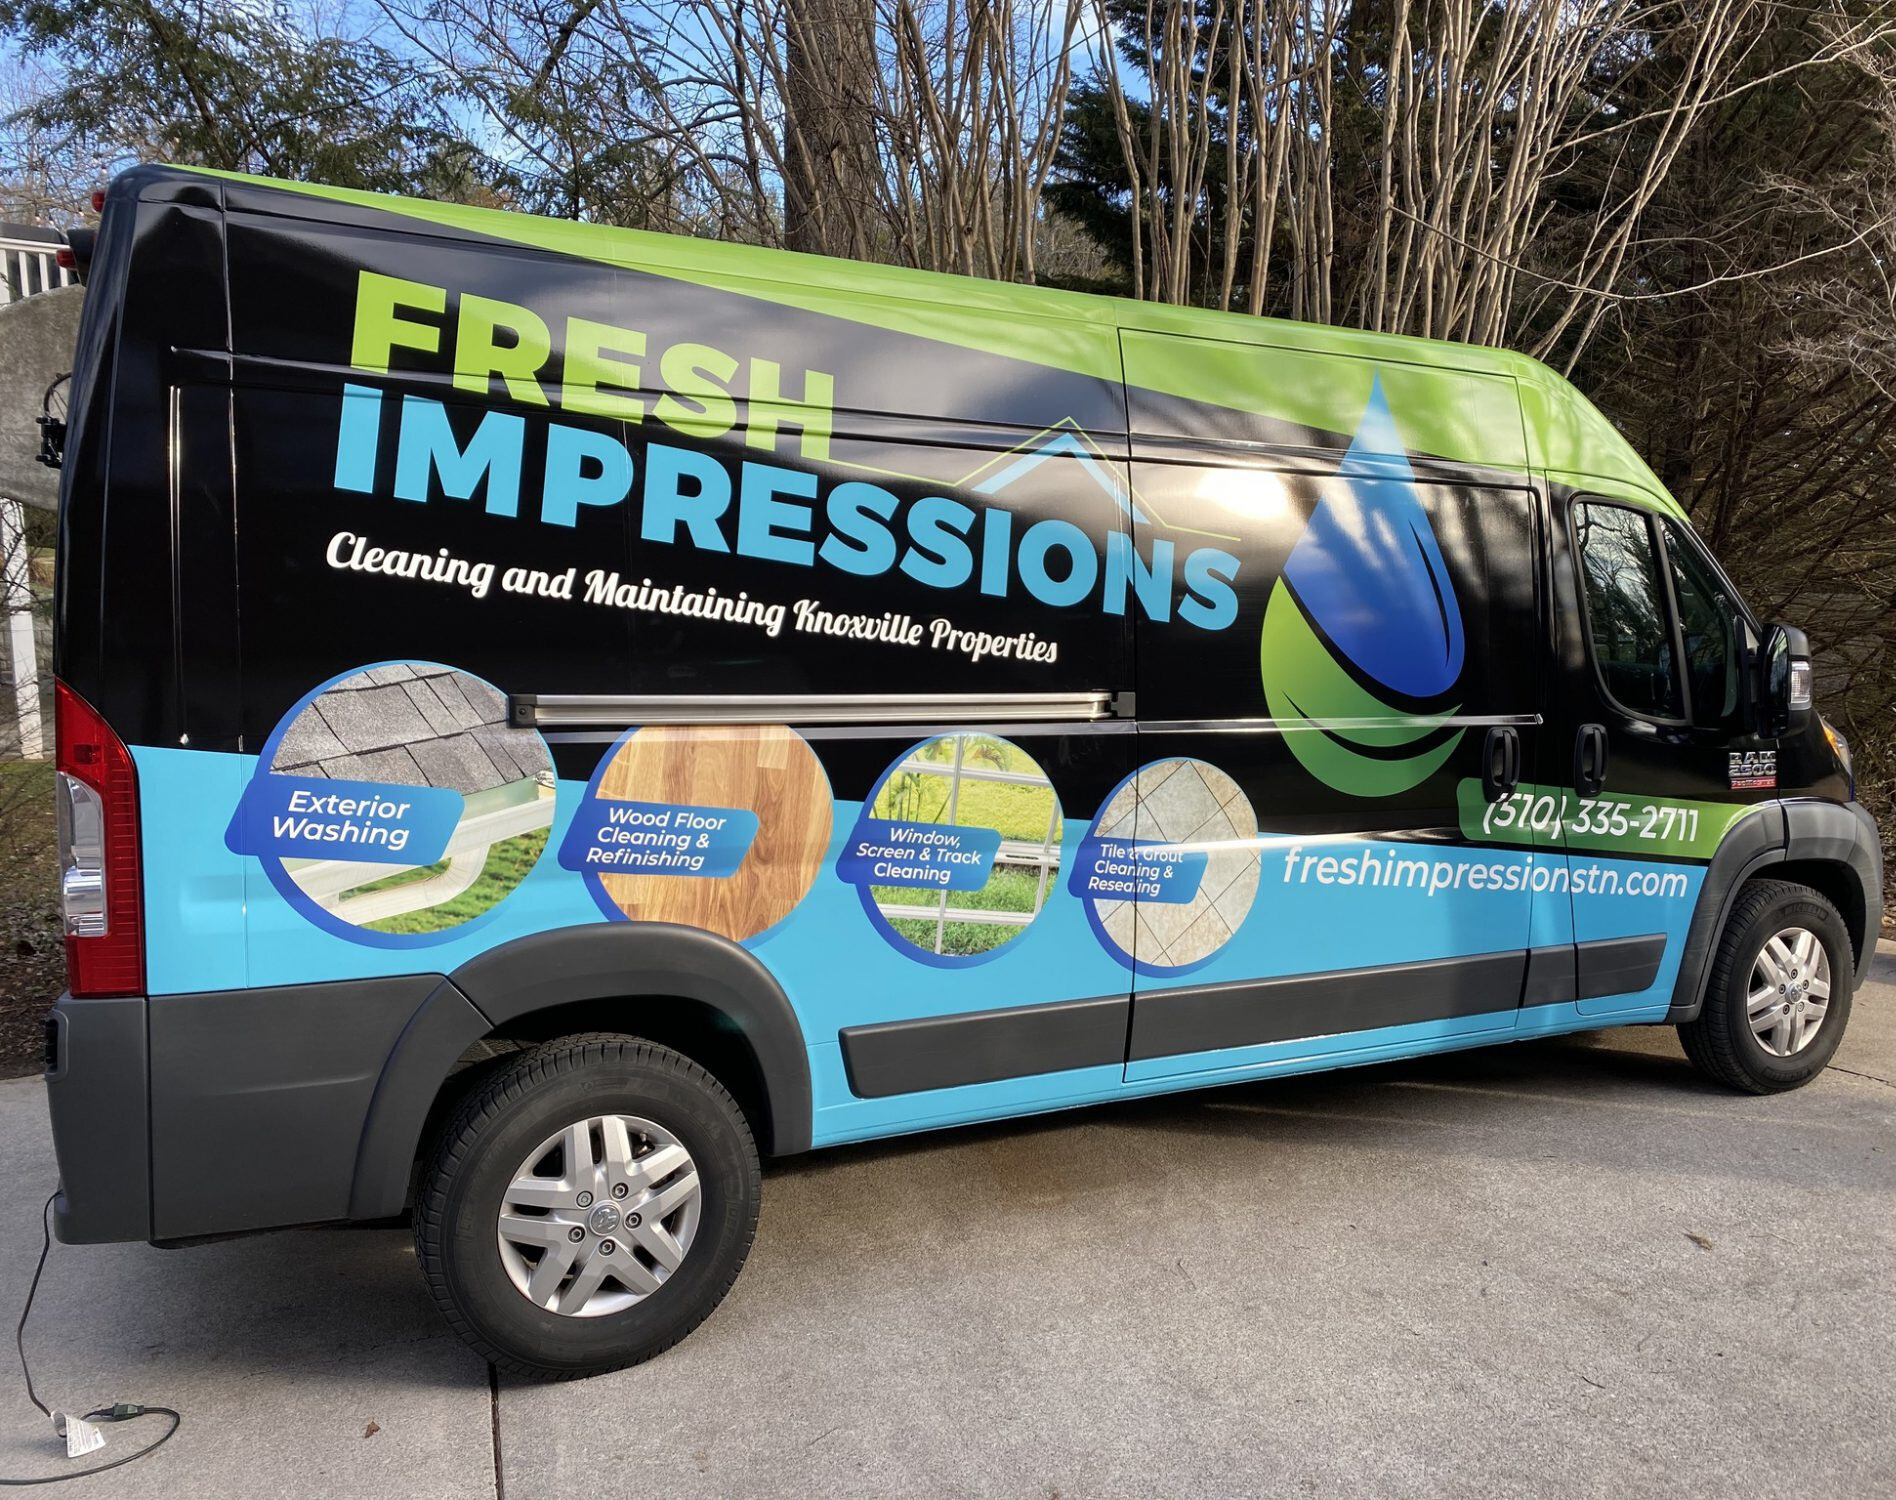 fresh impressions van